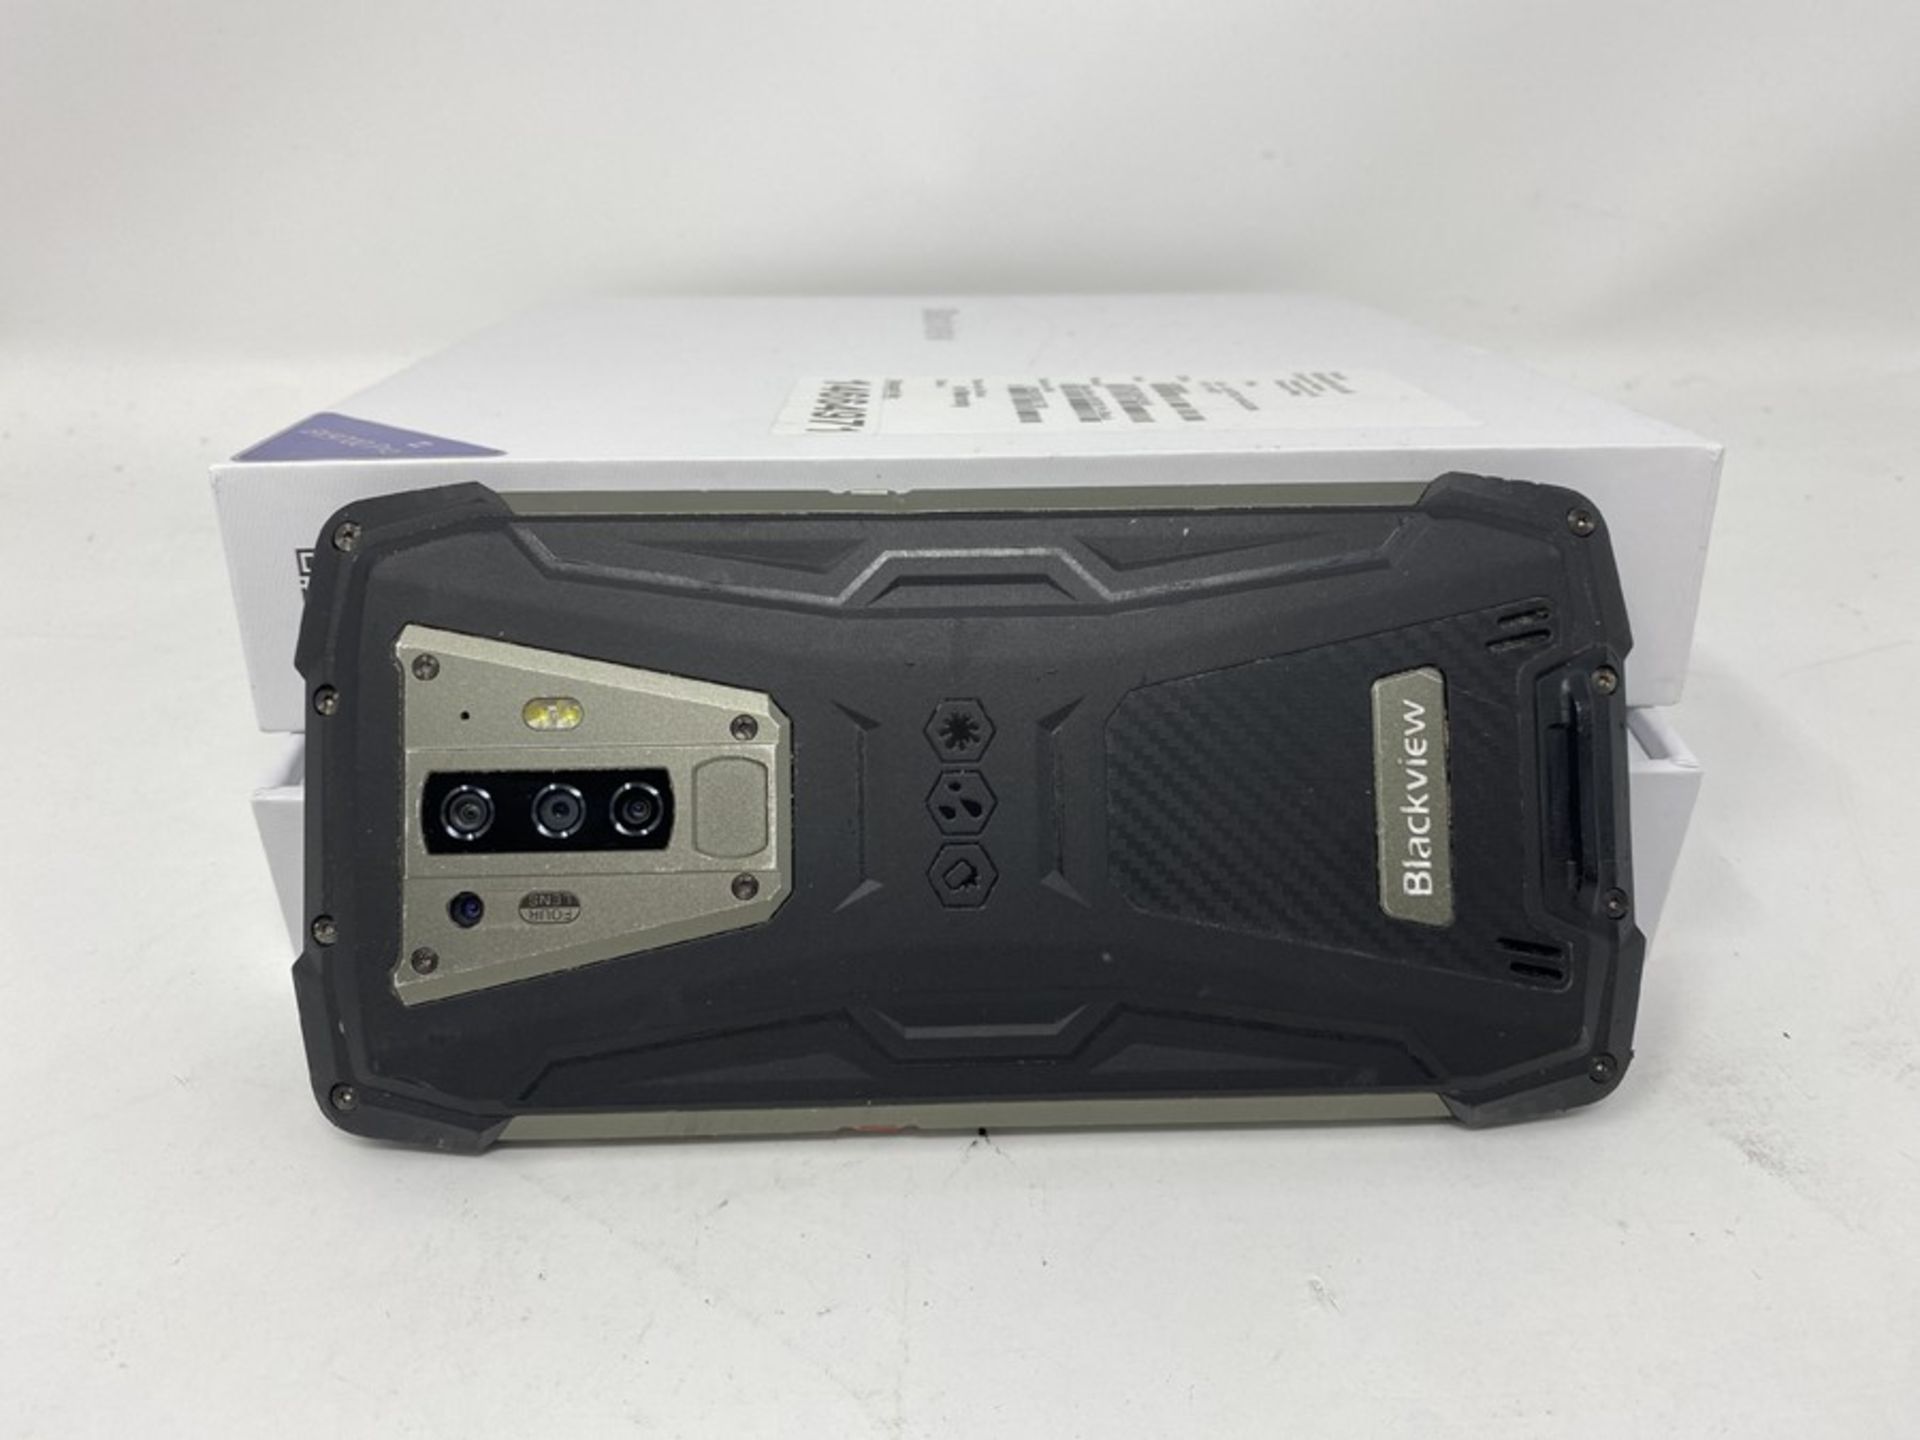 RRP £204.00 Rugged Smartphone Blackview BV6900, IP68 Waterpr - Image 2 of 2